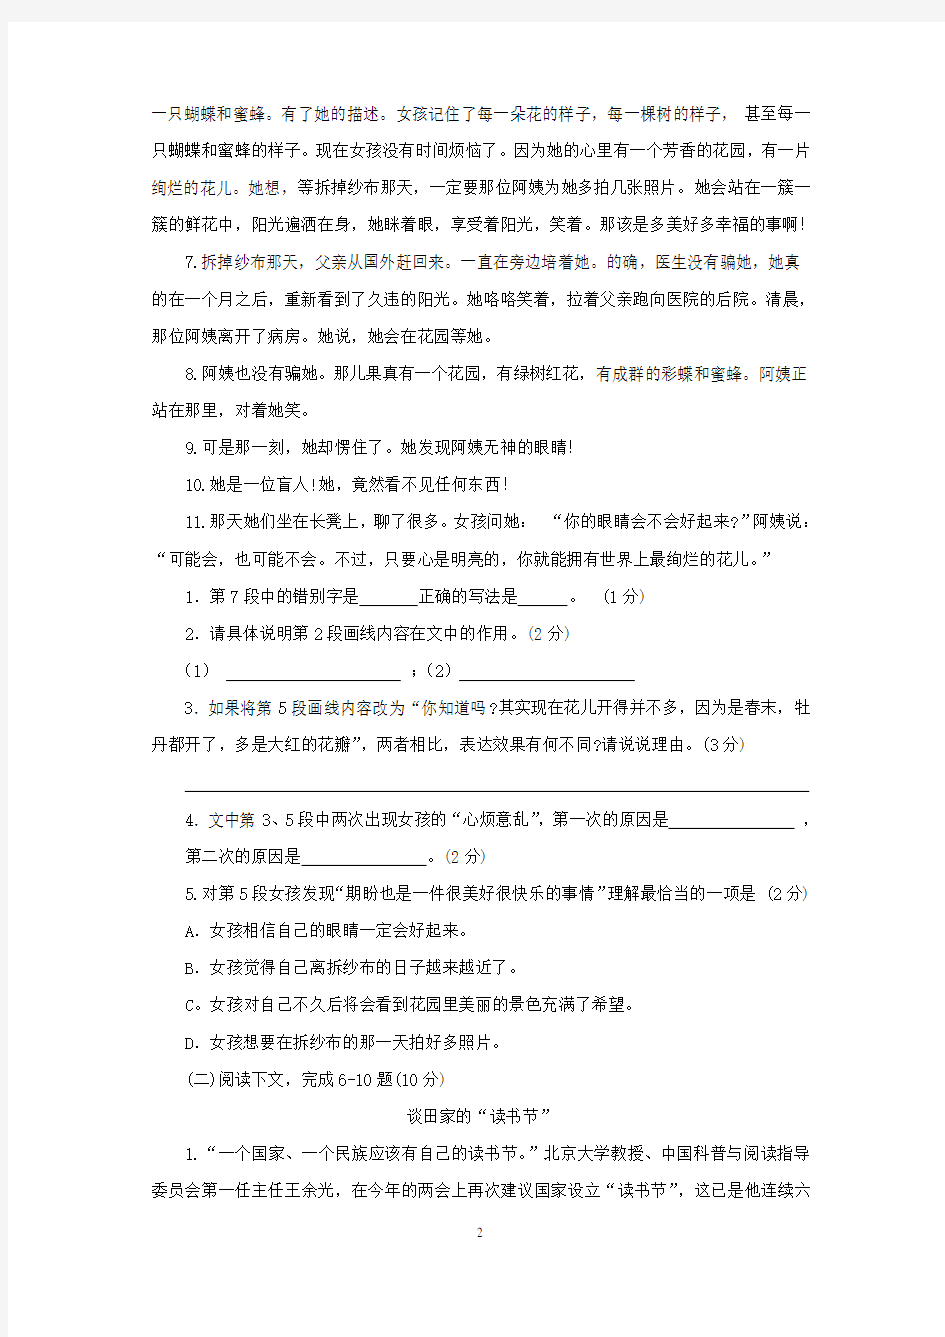 上海三校生语文考试试卷